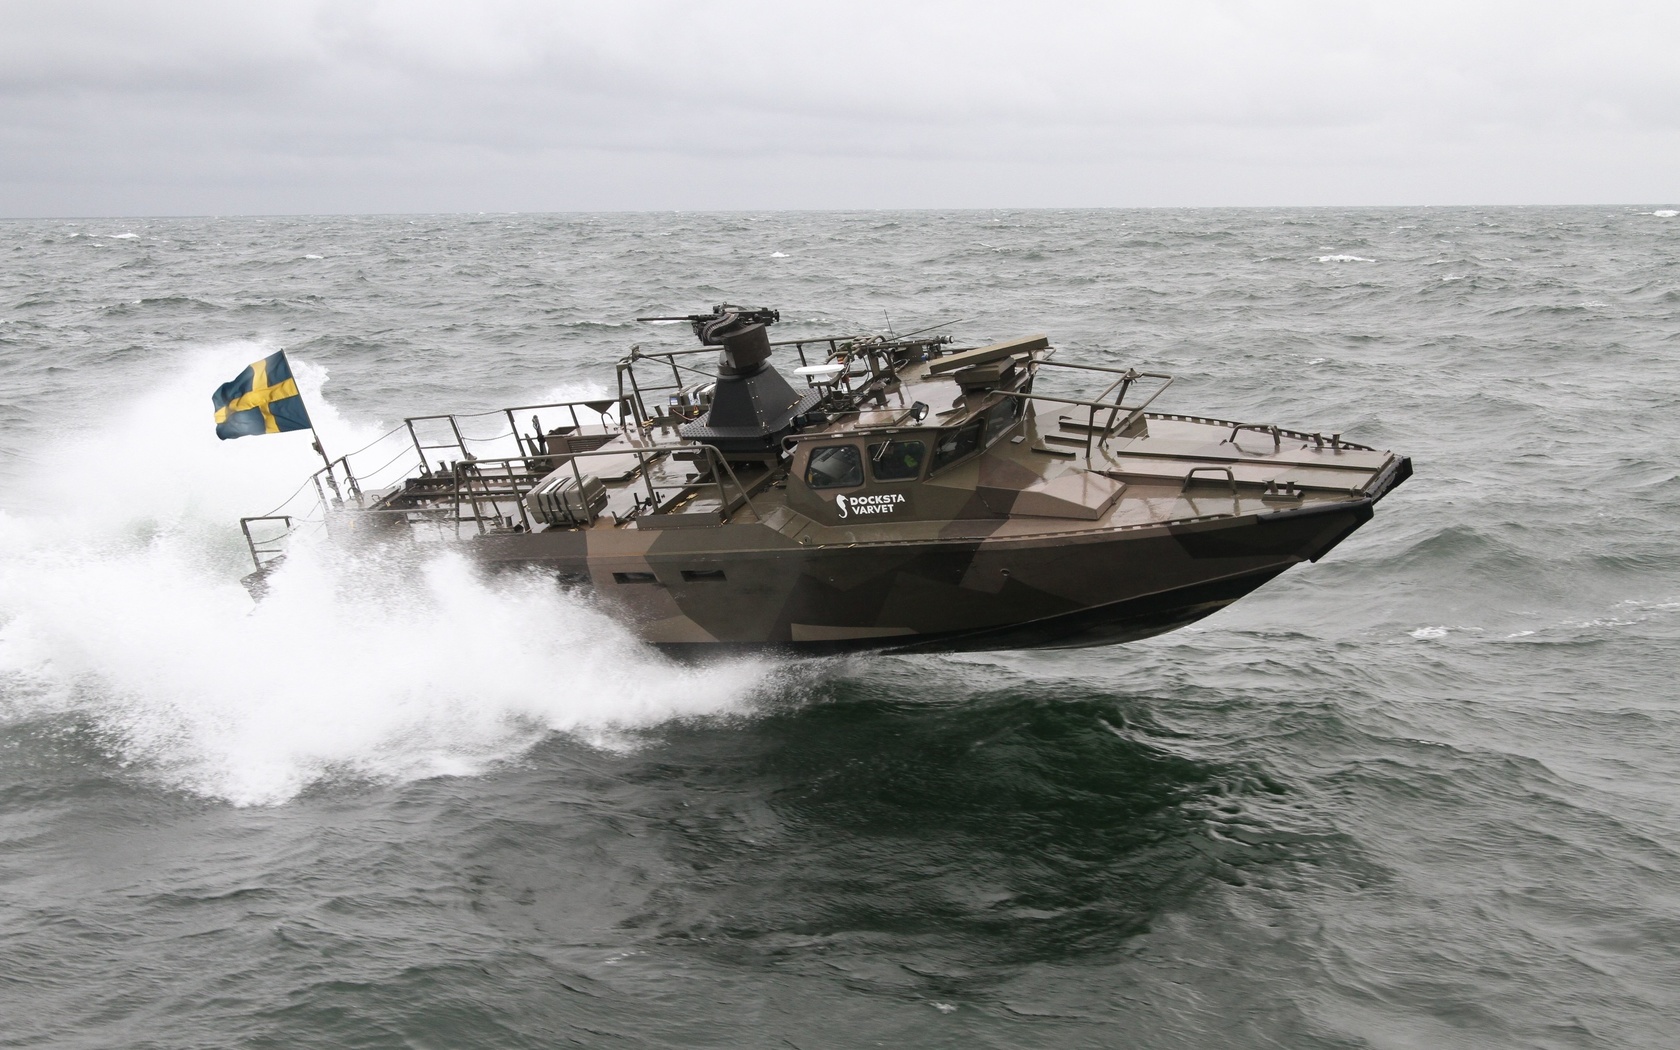 saab, combat boat, docksta cb90